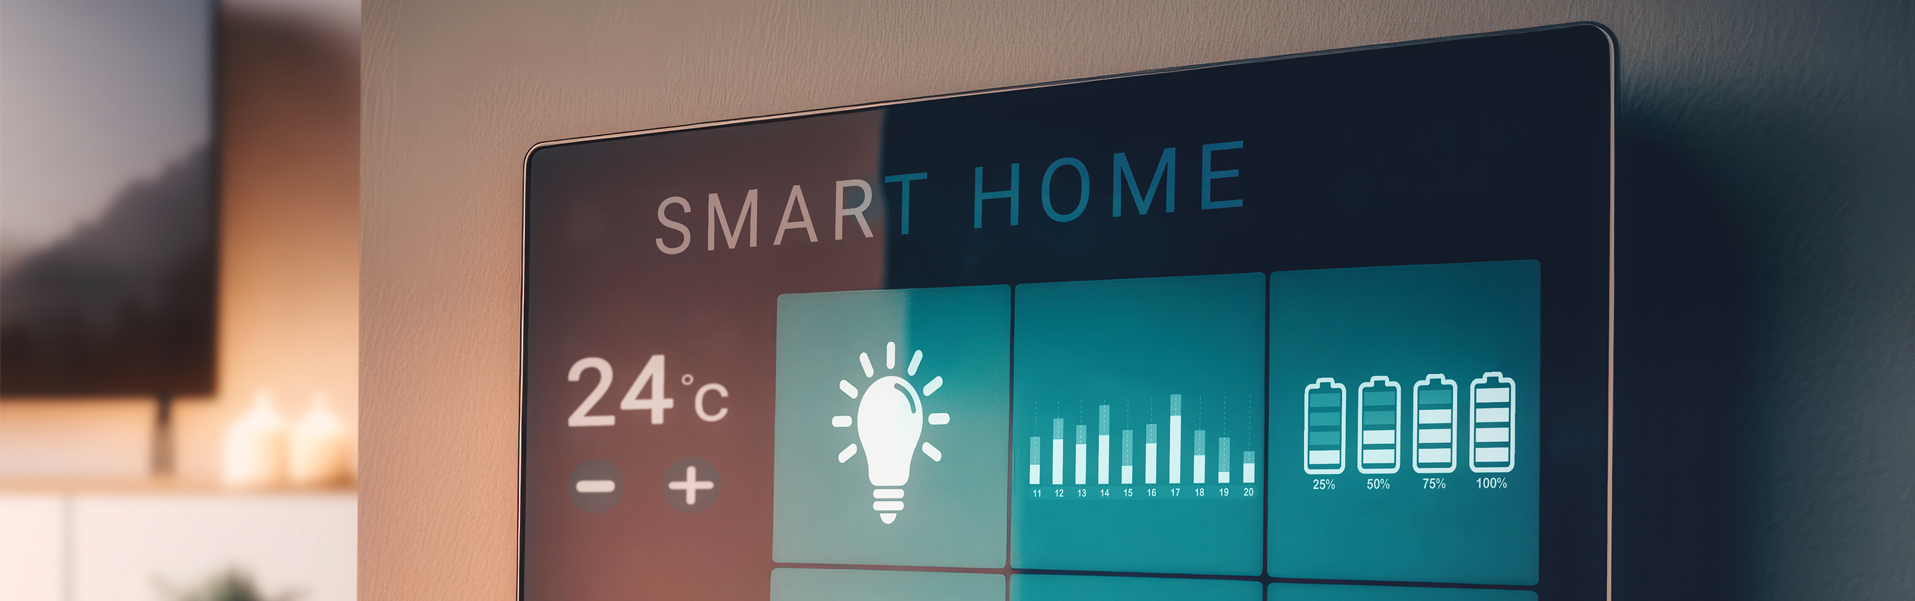 Starten Sie jetzt in Welt von Smart Home.